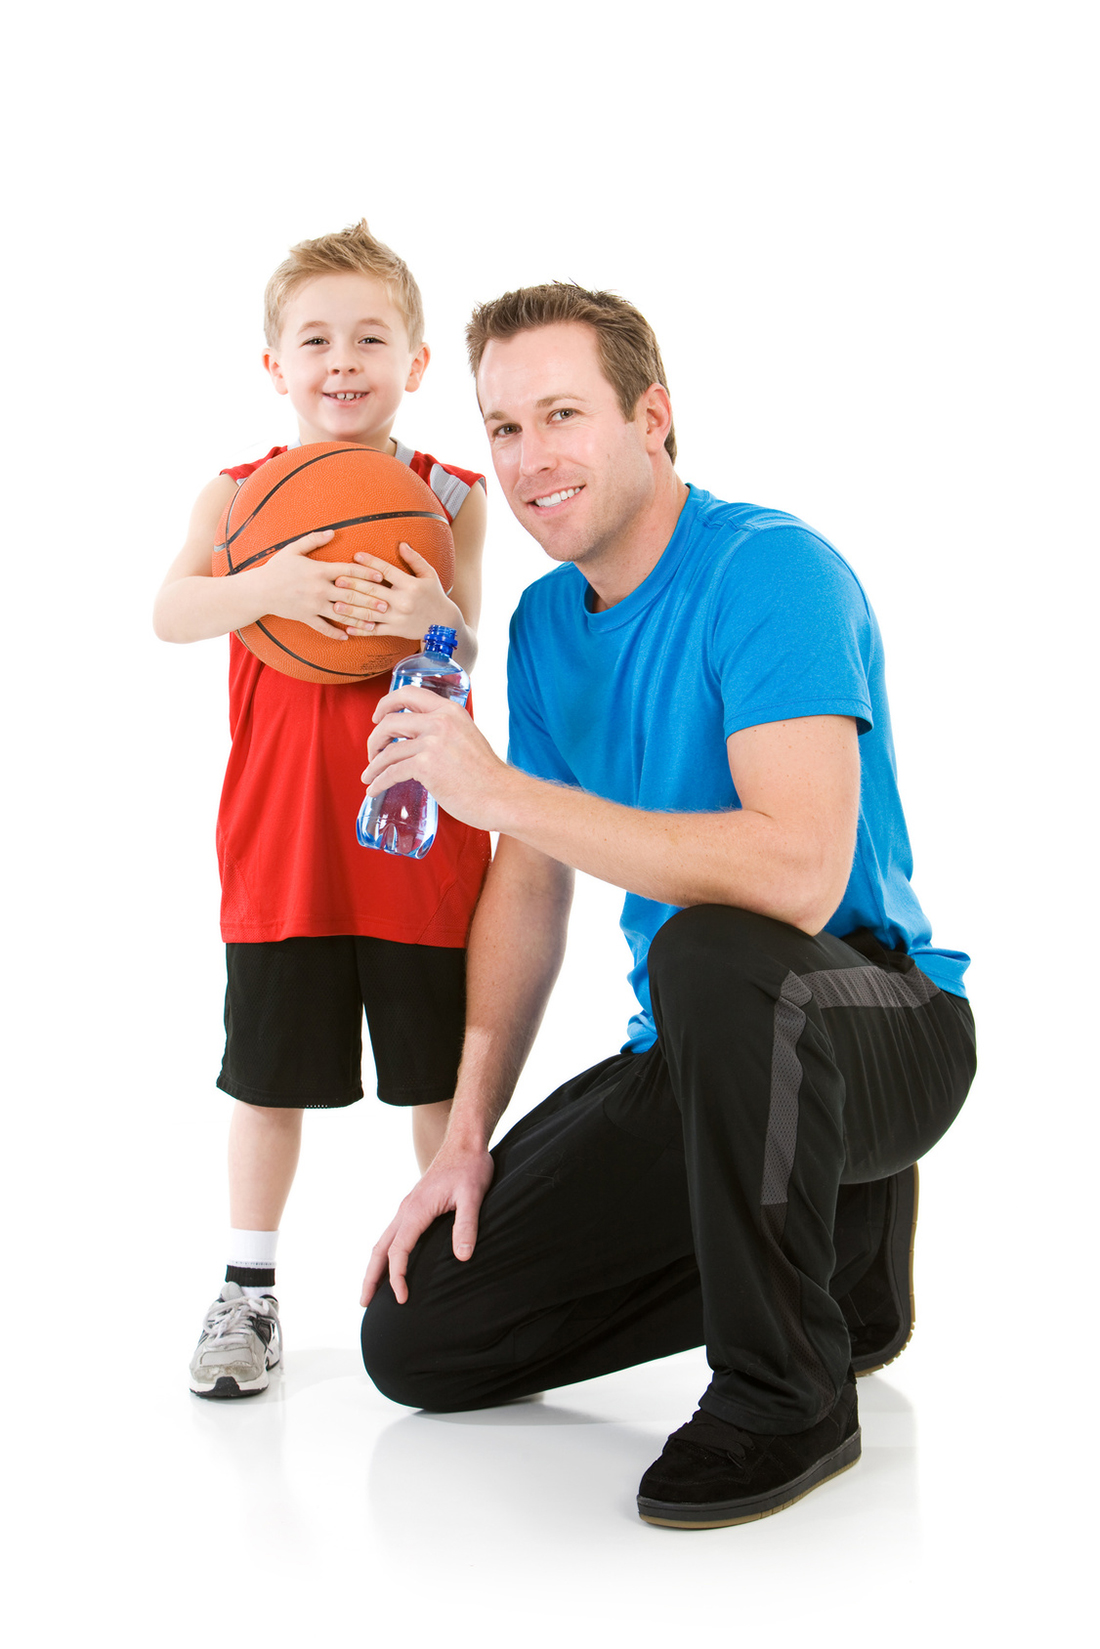 5 ejercicios básicos  para introducir a los niños al basquet. por Viva Basquet